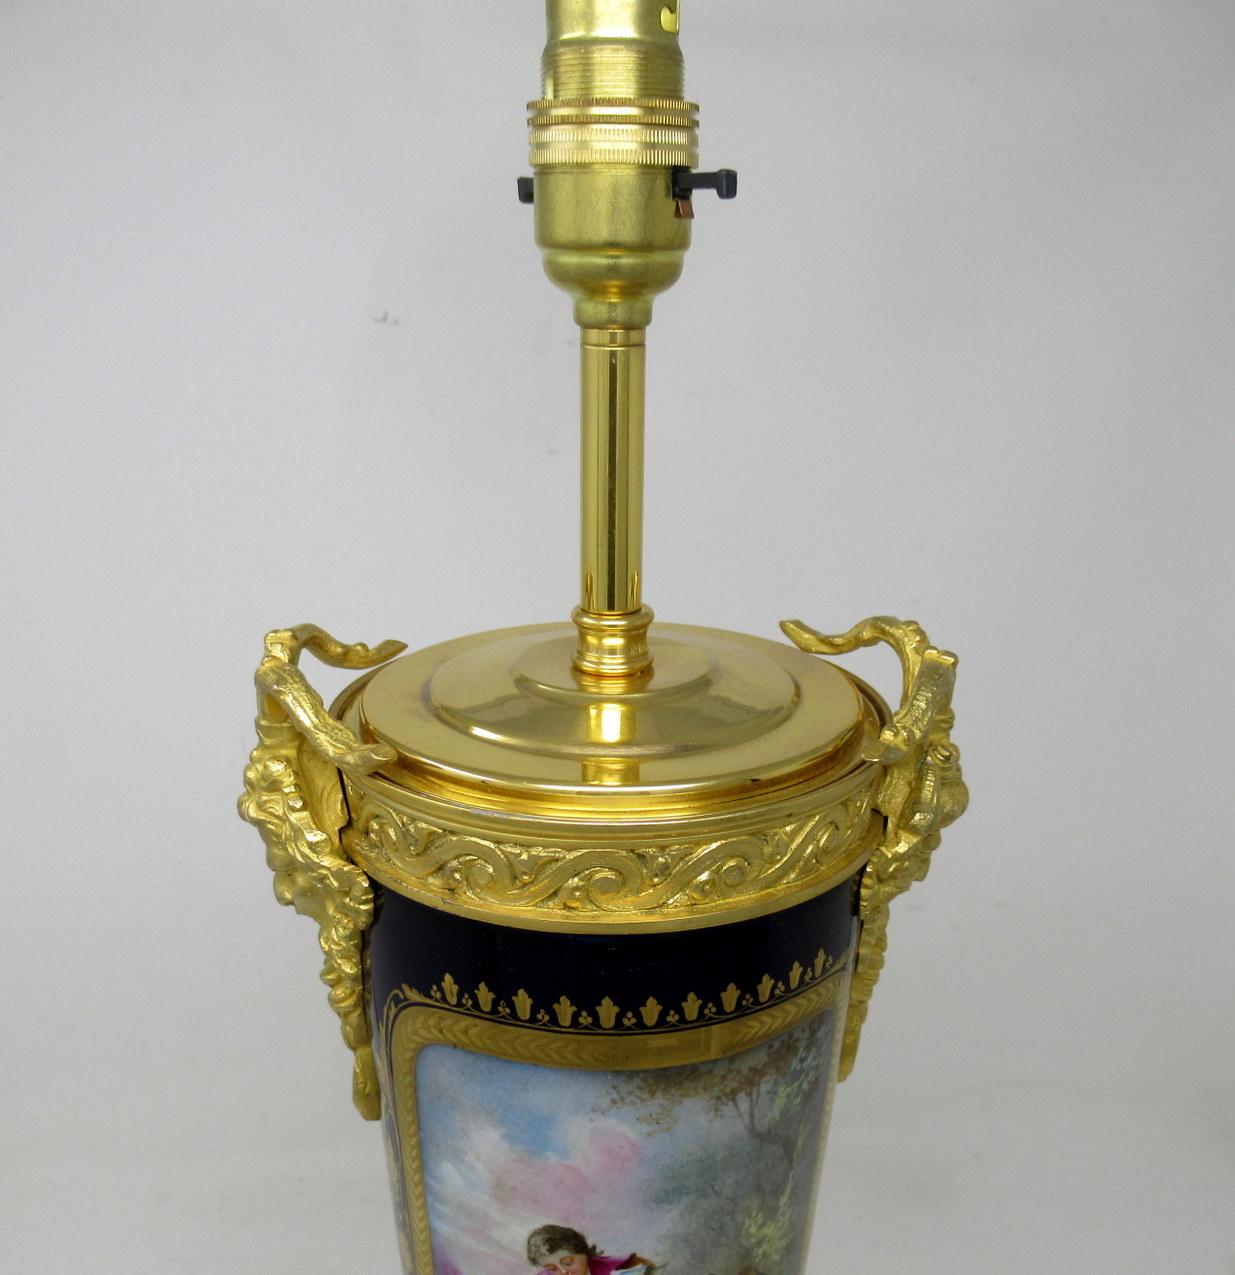 Pair Antique French Sèvres Porcelain Ormolu Gilt Bronze Dore Table Urns Lamps For Sale 2